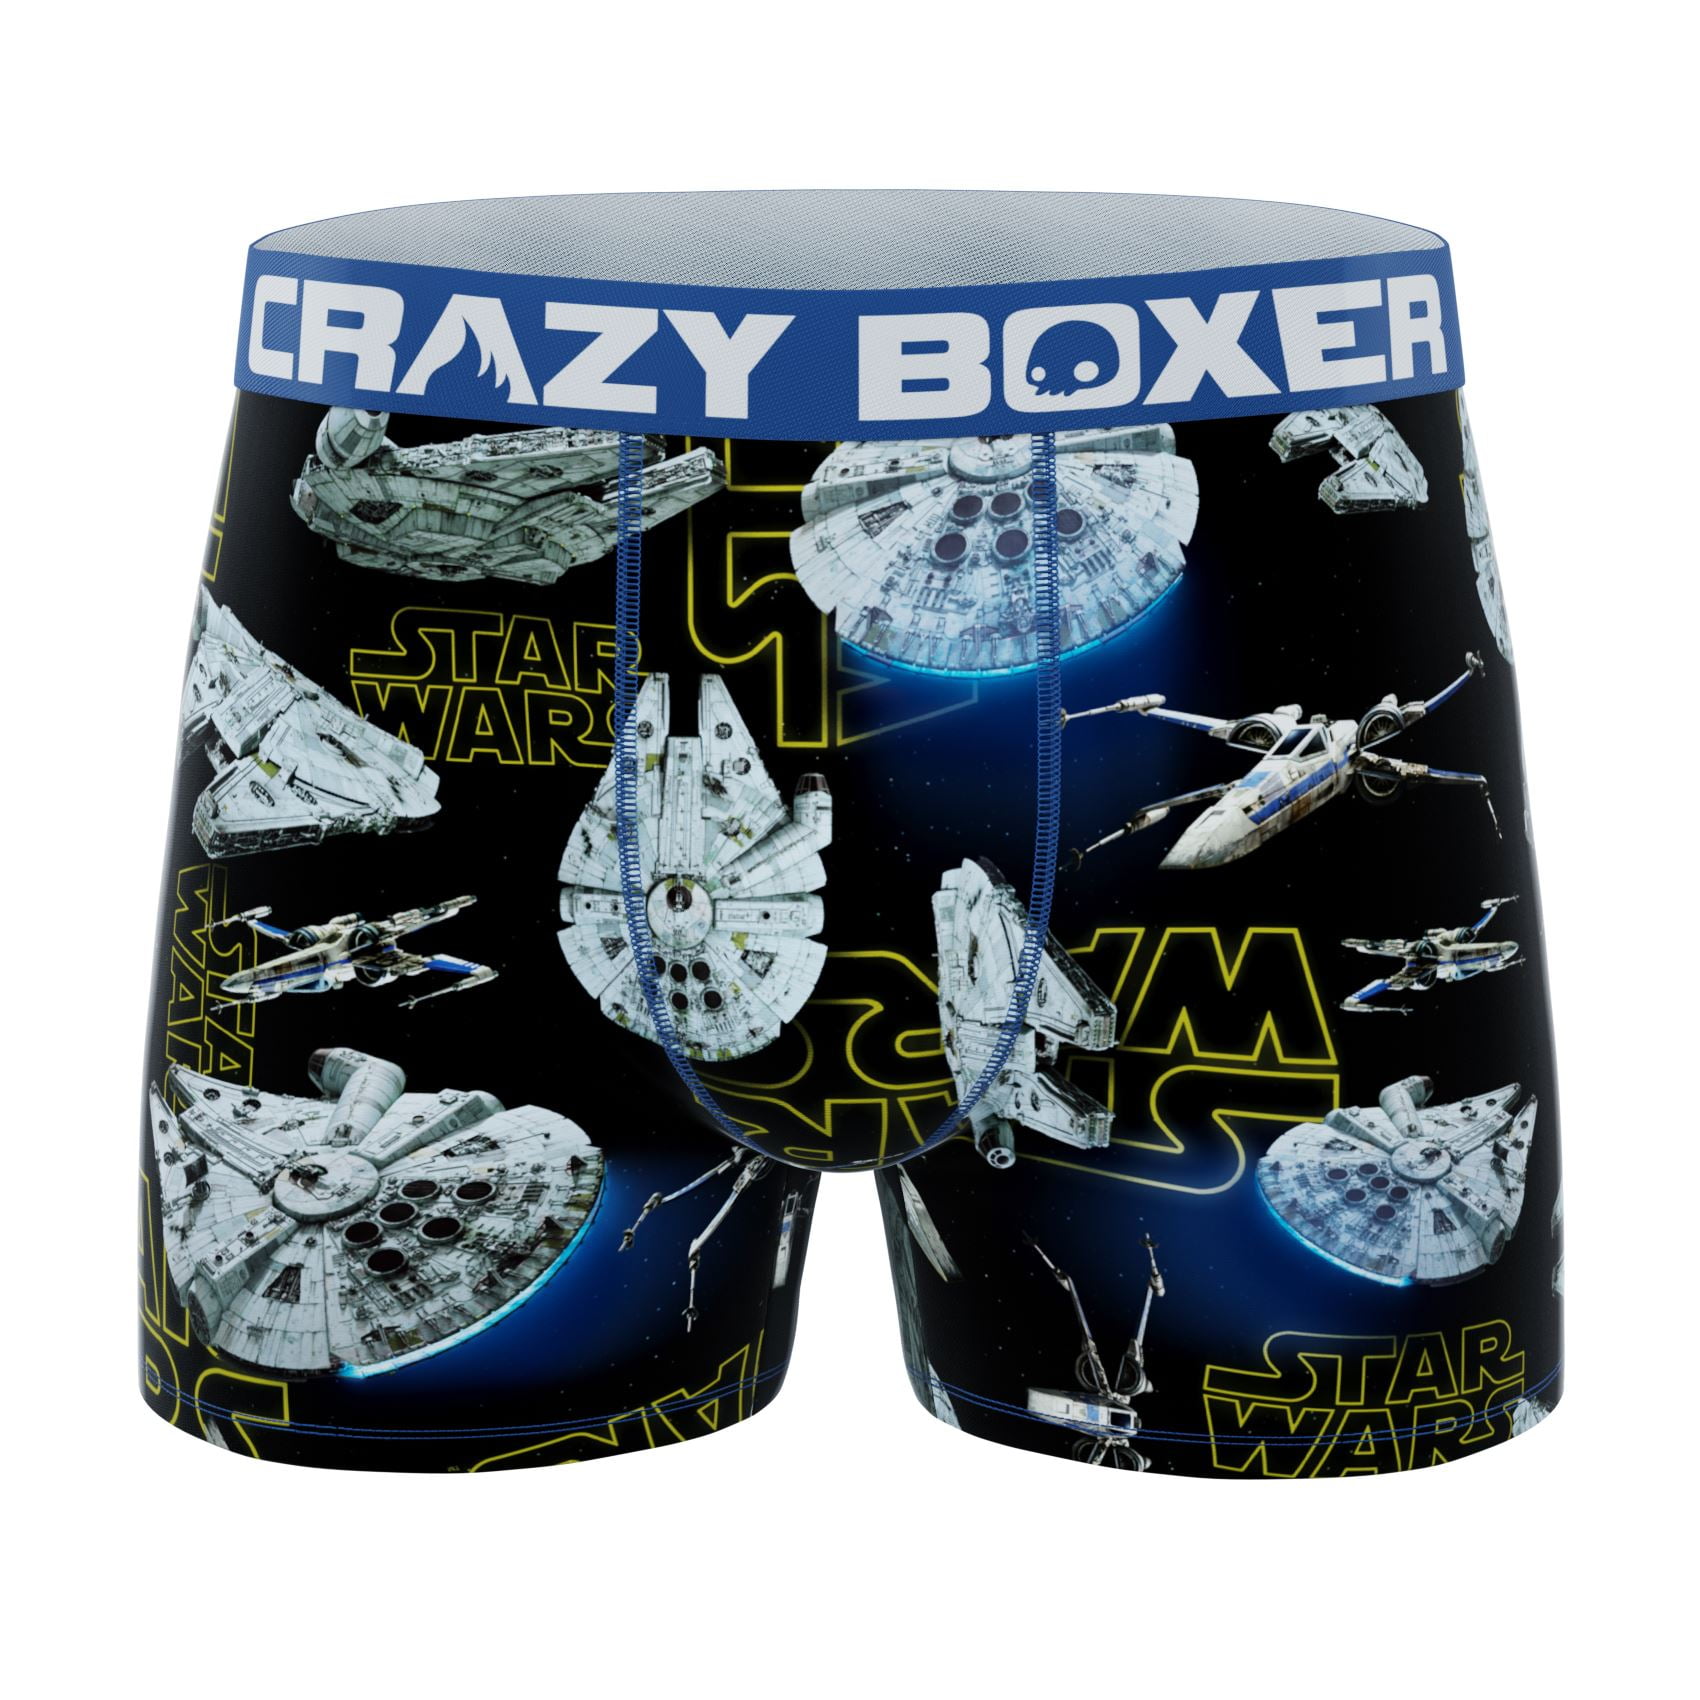 CRAZYBOXER Men's Underwear Star Wars Non-slip waistband Freedom of movement  Boxer Brief Soft 